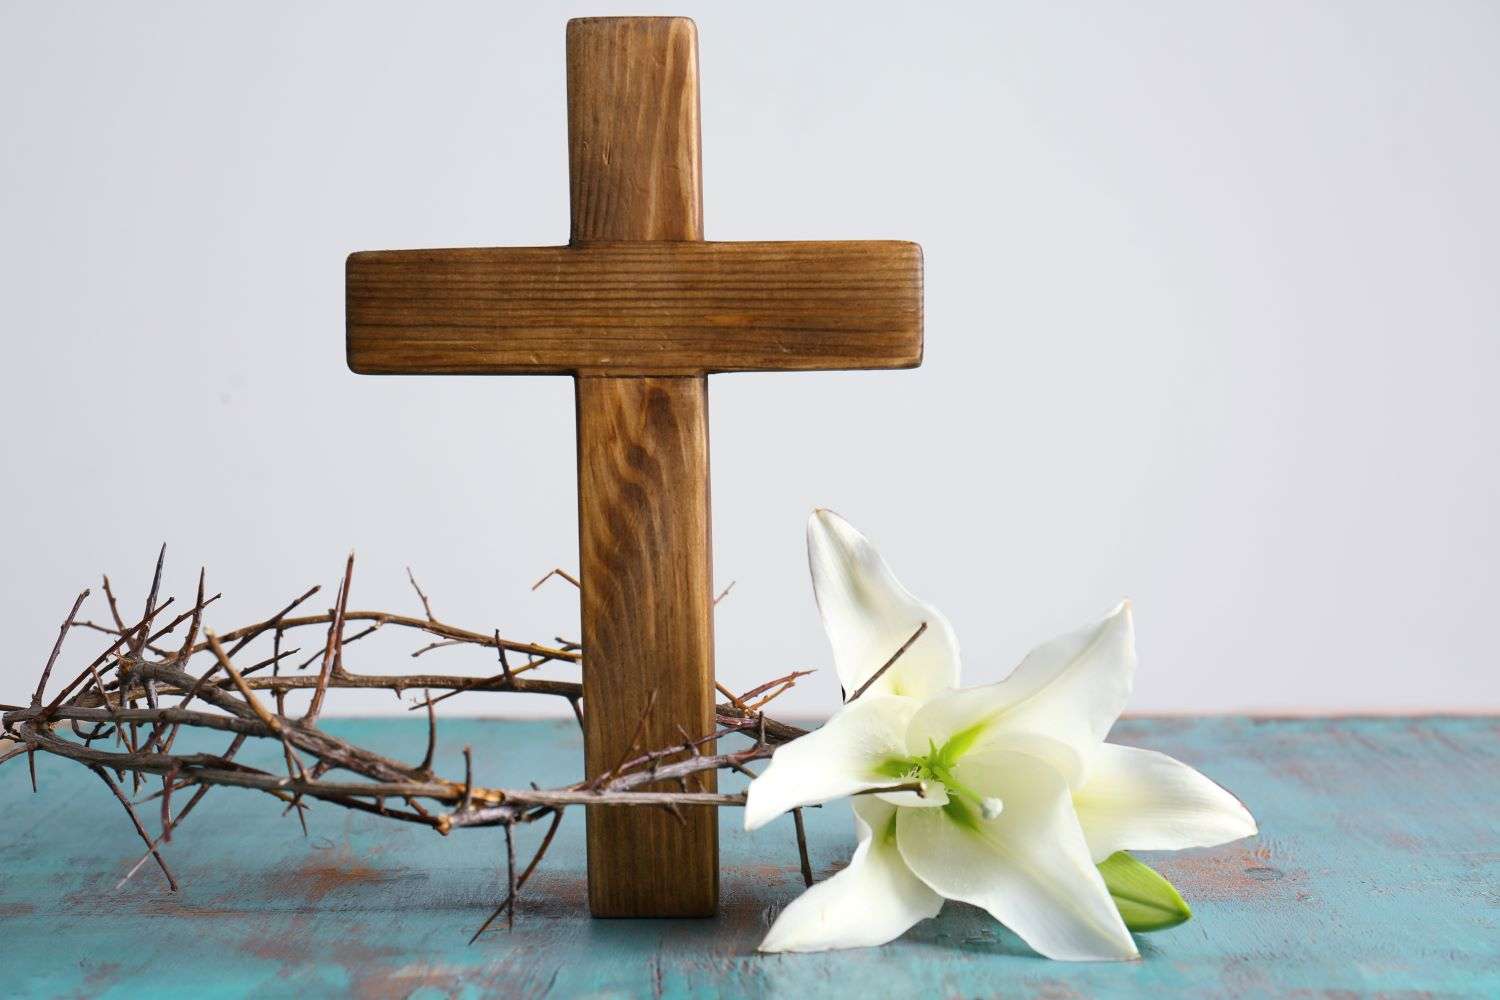 Une image d'une croix en bois avec des fleurs blanches disposées devant elle en hommage au Vendredi Saint.